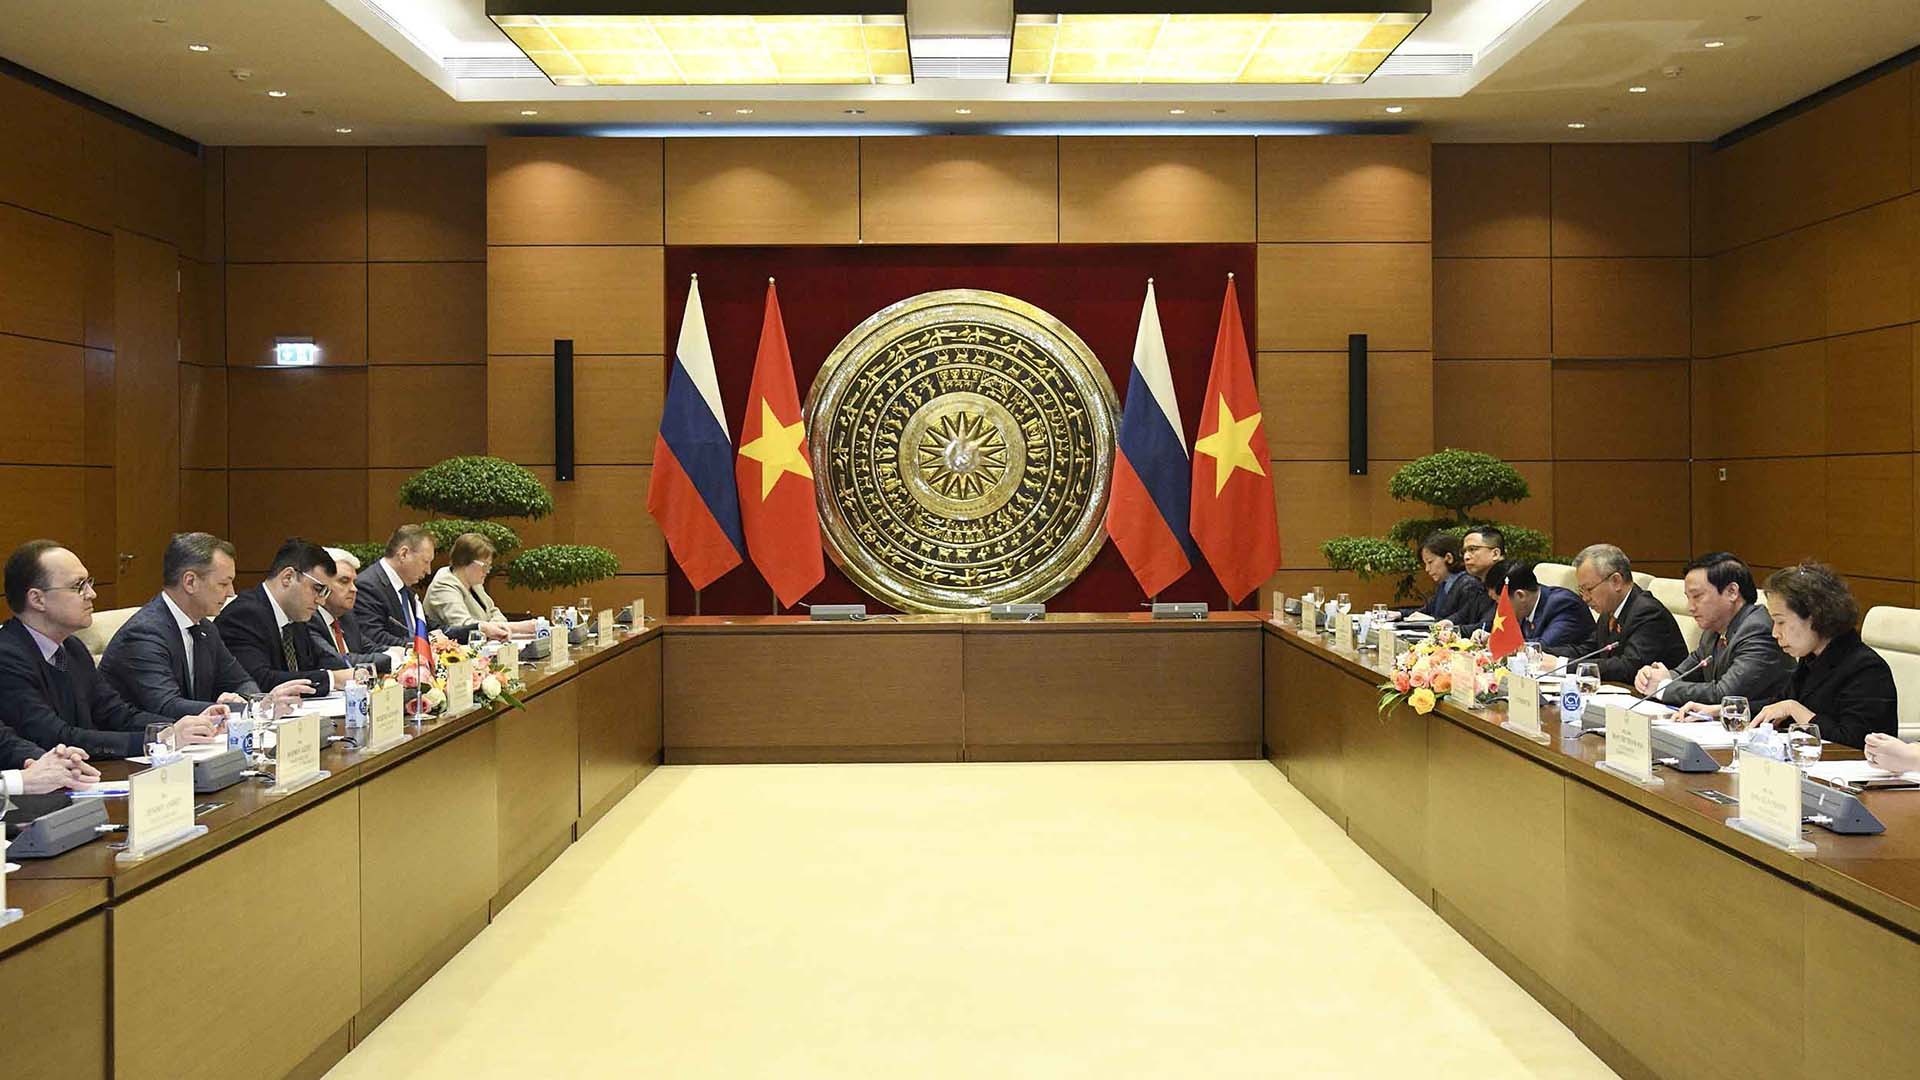 Hợp tác nghị viện là một trong những trụ cột quan trọng trong quan hệ Việt Nam-Liên bang Nga